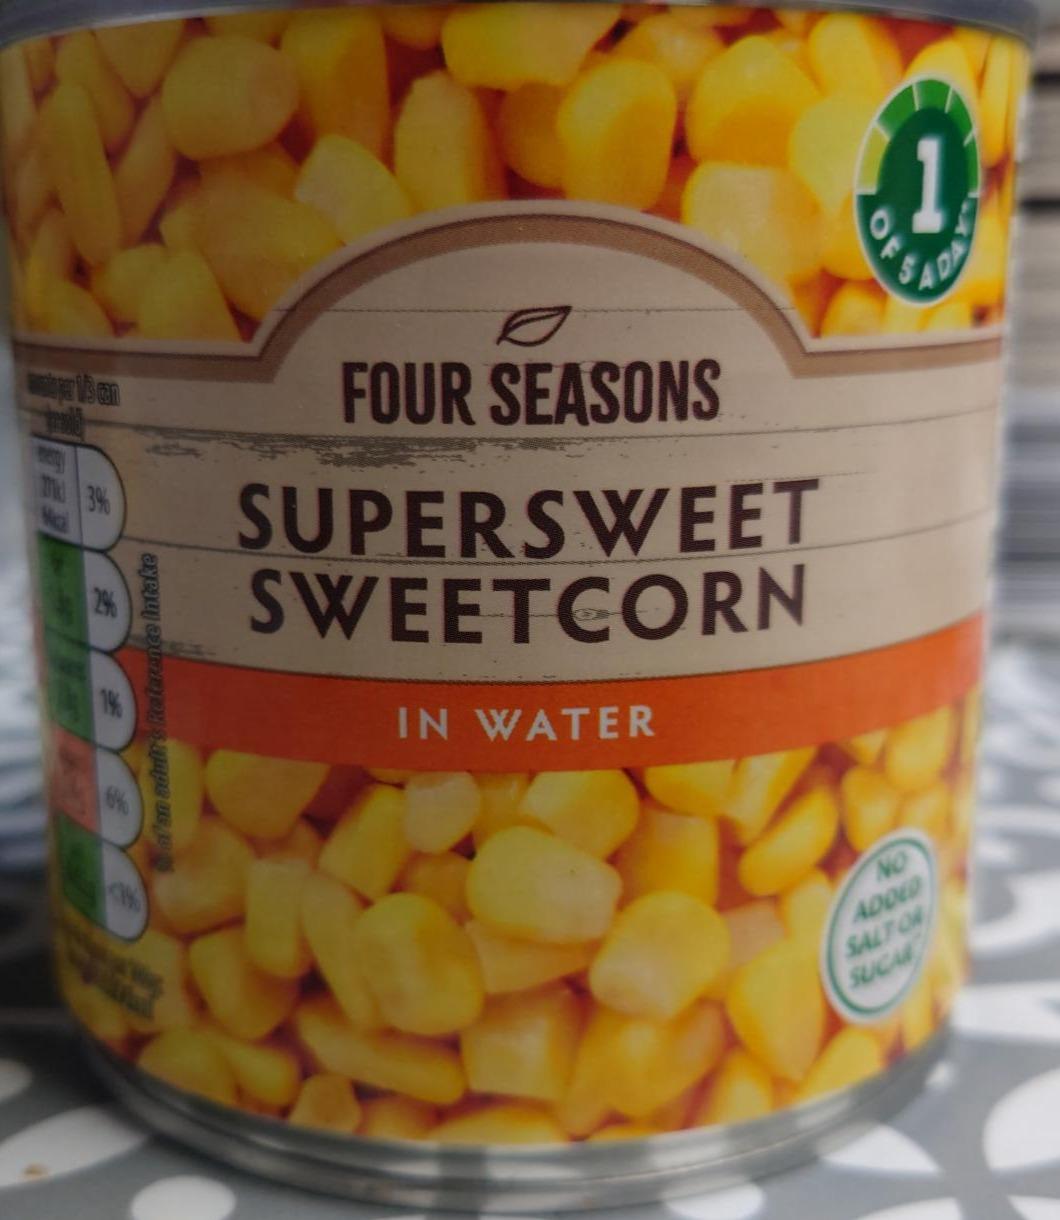 Fotografie - Supersweet Sweetcorn in Water Four Seasons